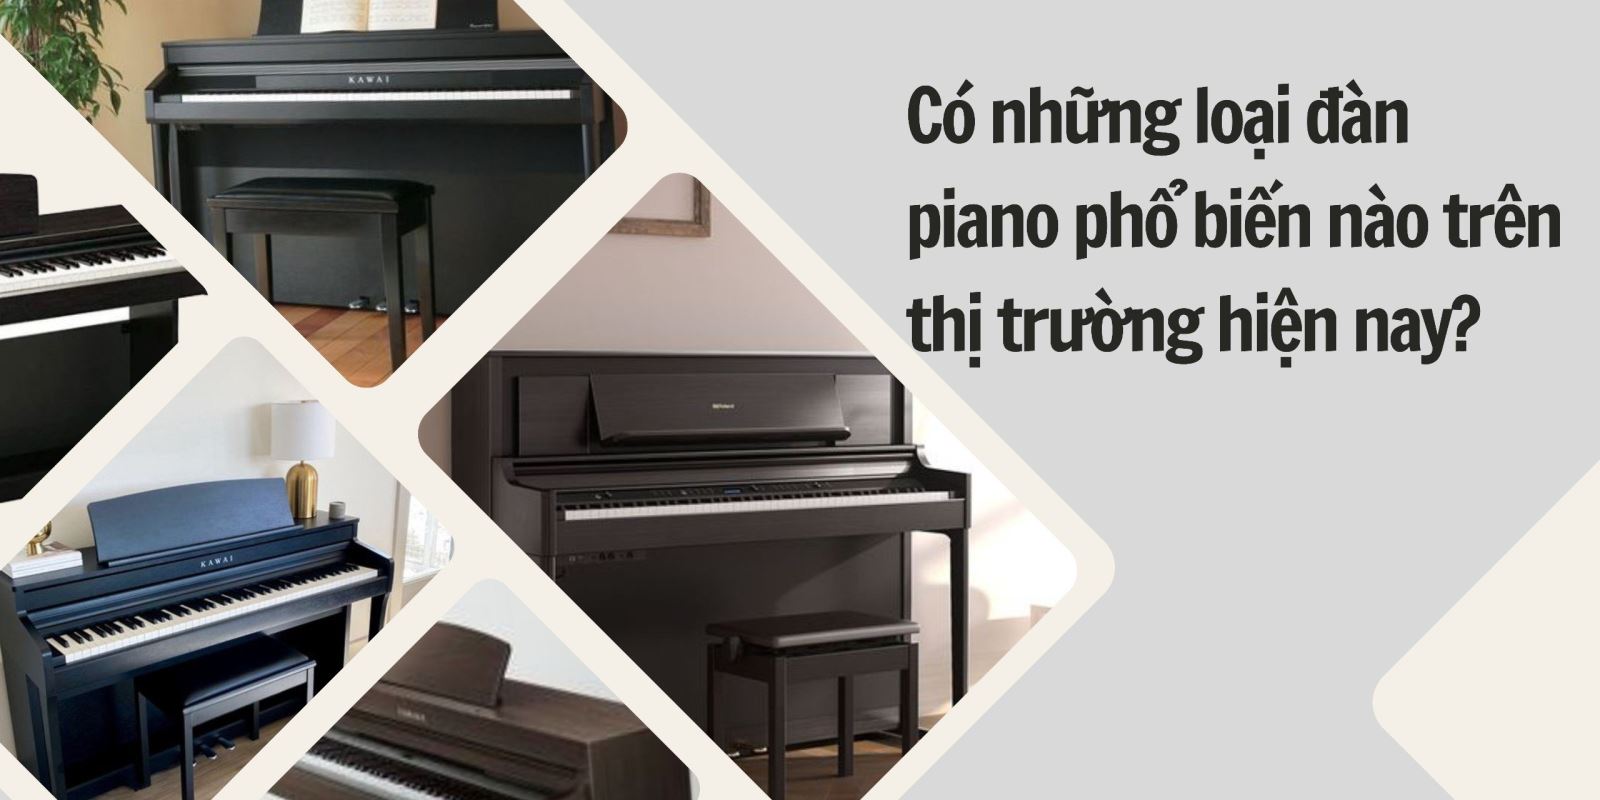 có những loại piano nào phổ biến trên thị trường hiện nay